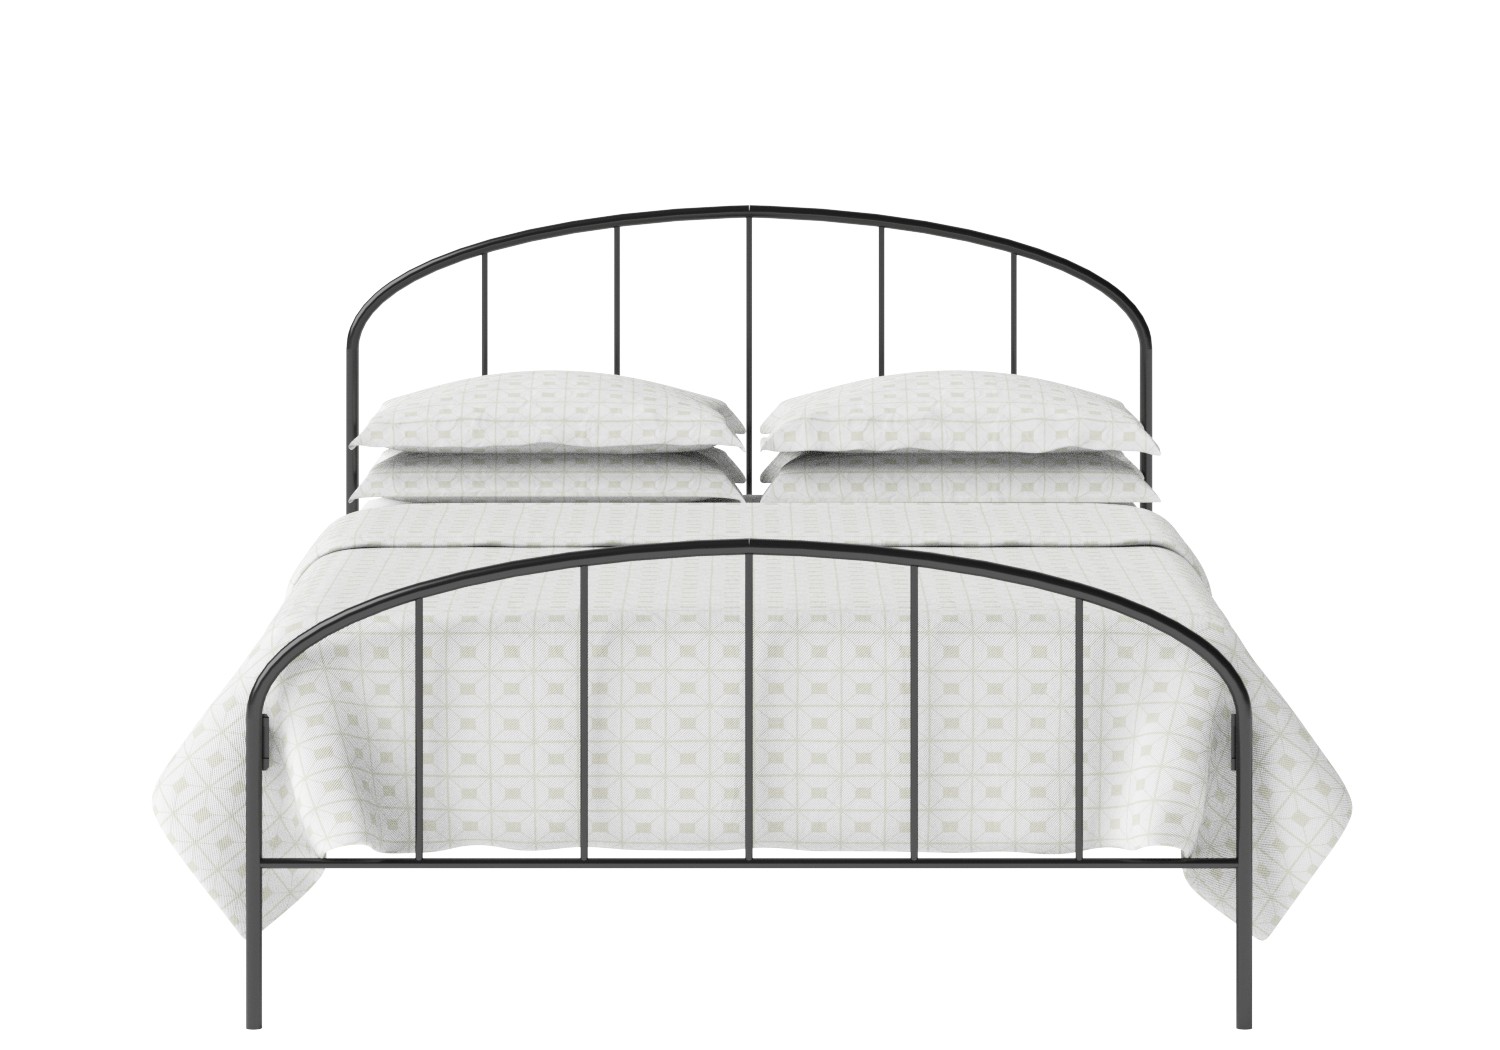 Uitgelezene Waldo - IJzeren/Metalen bed frame - The Original Bed Co - NL GX-36